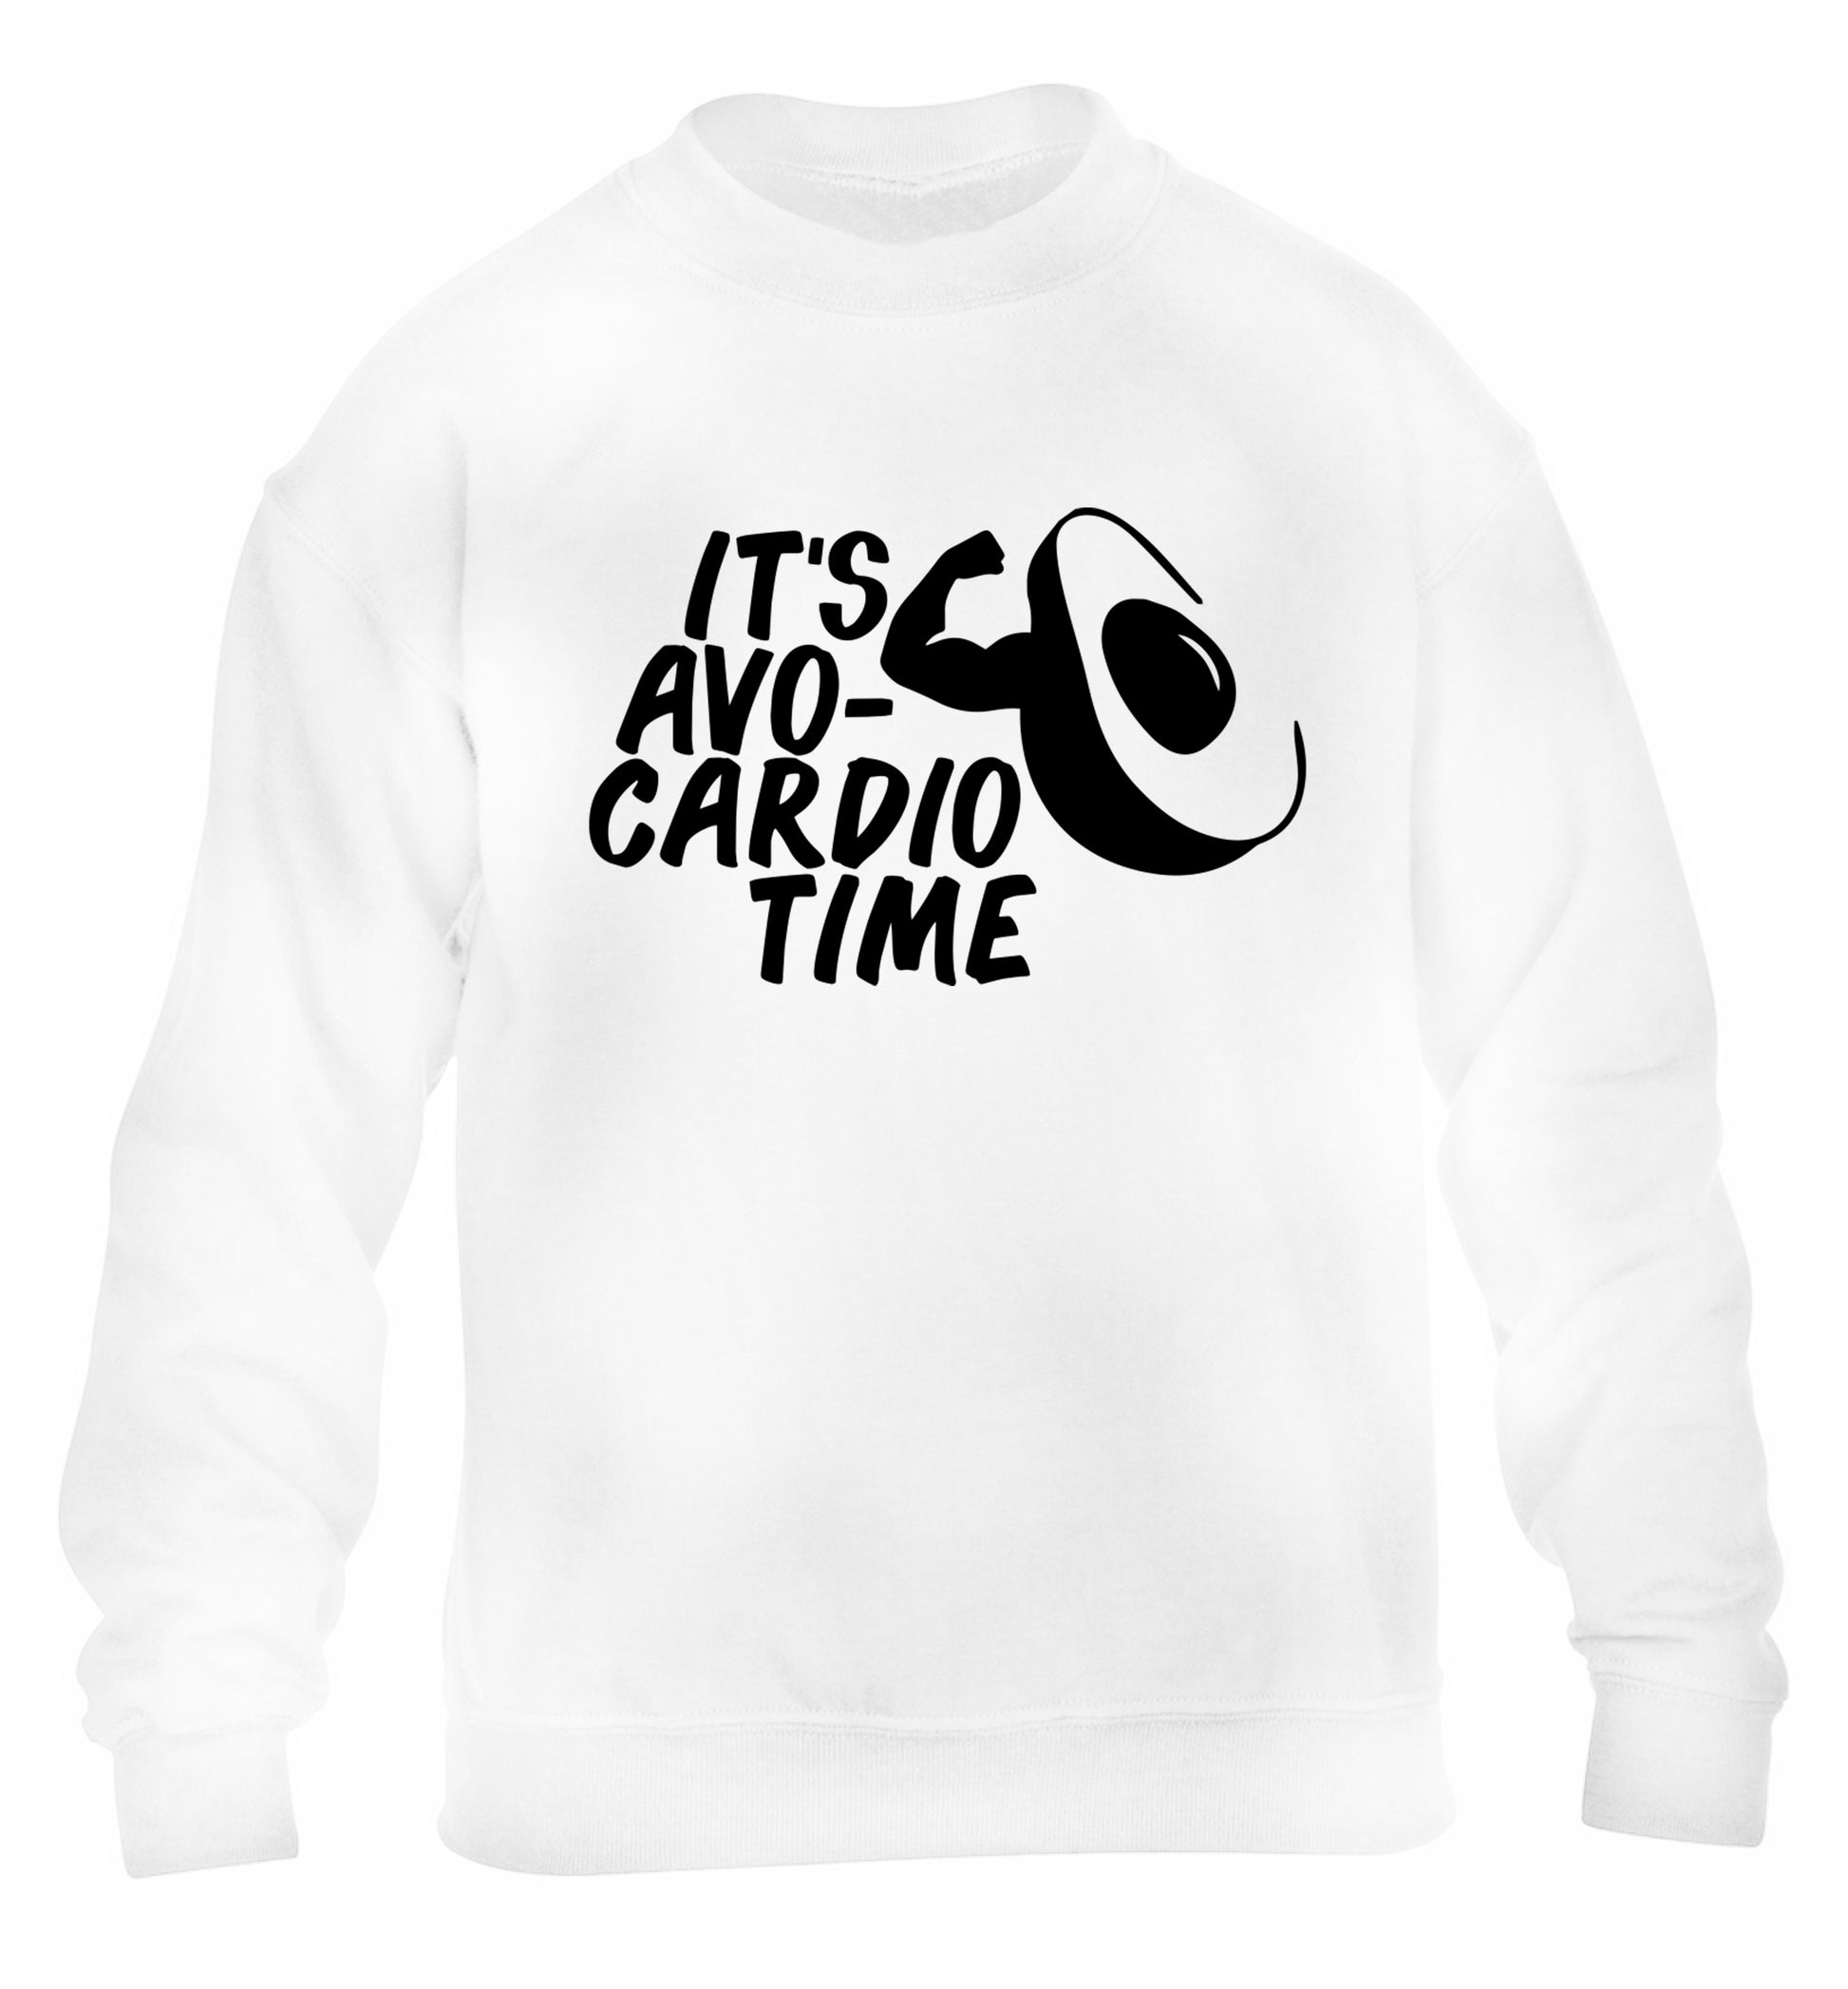 It's avo-cardio time children's white sweater 12-14 Years